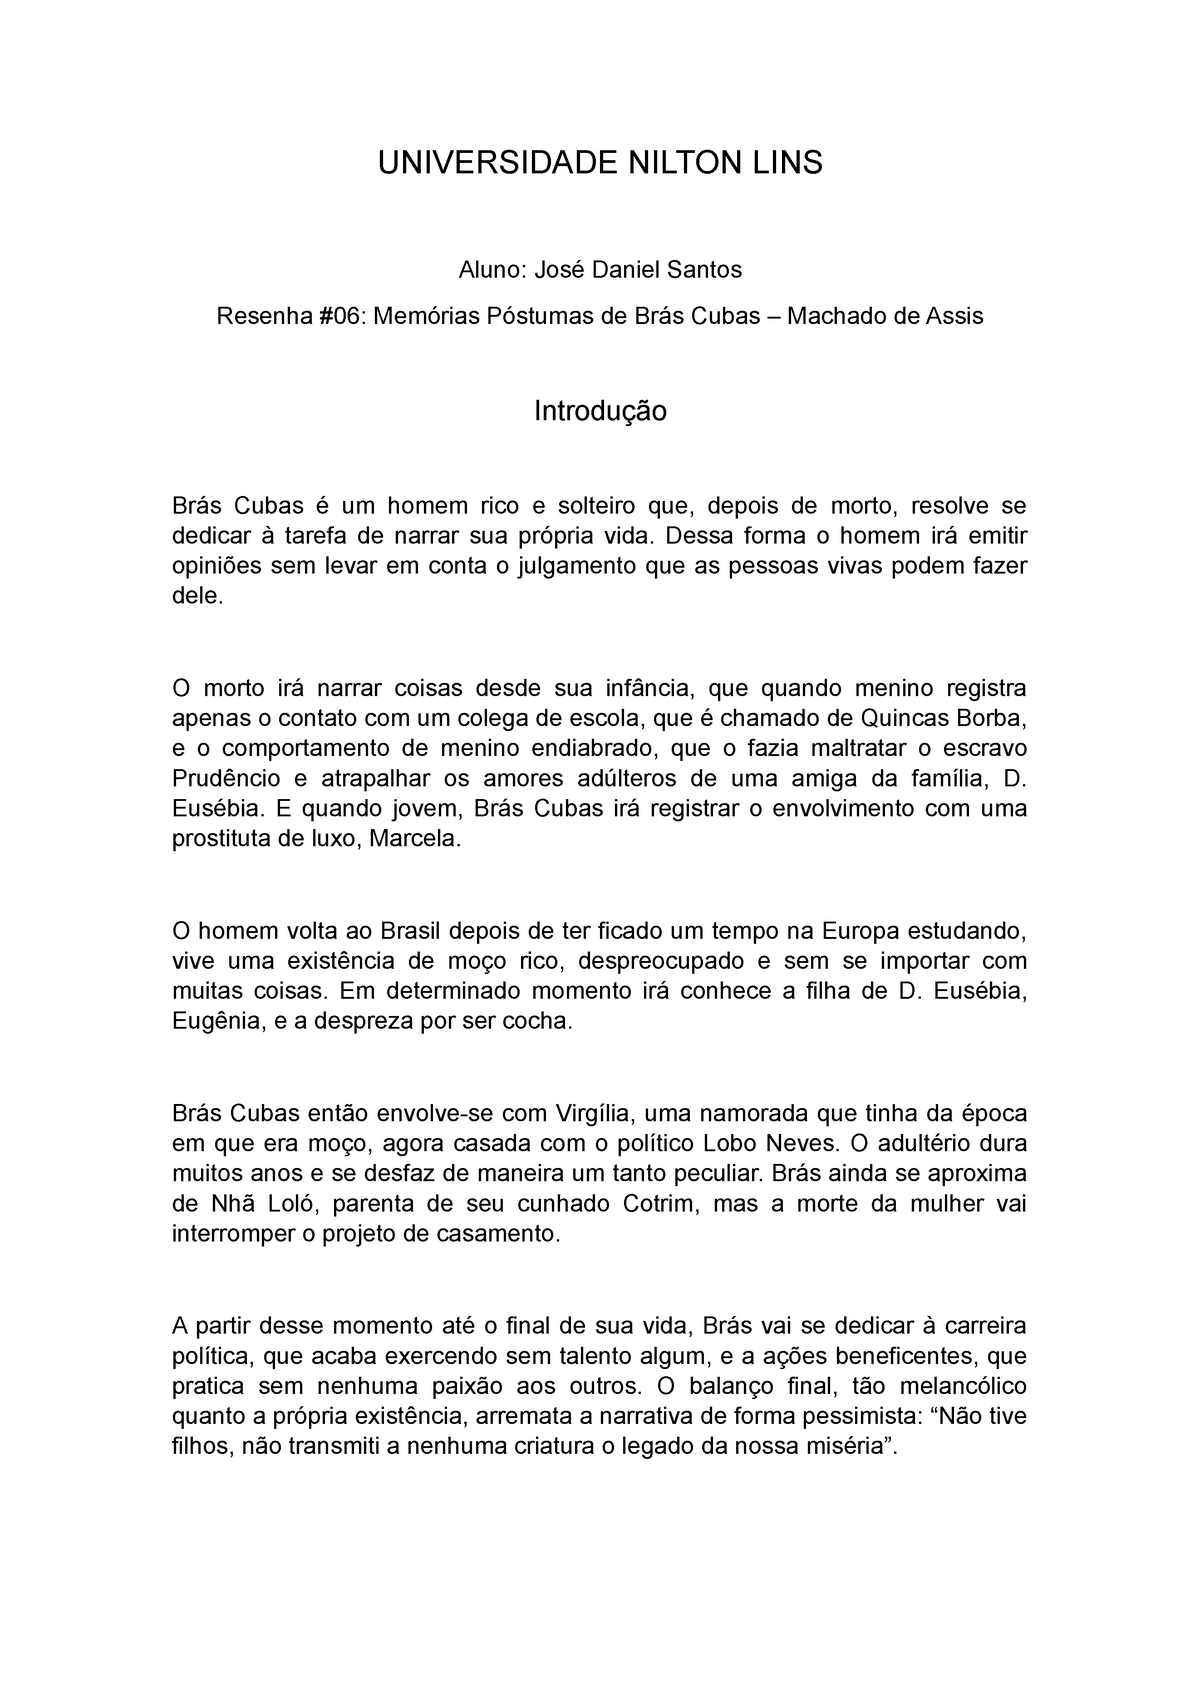 Resenha (05) – Memórias Póstumas de Brás Cubas - UNIVERSIDADE NILTON LINS  Aluno: José Daniel Santos - Studocu